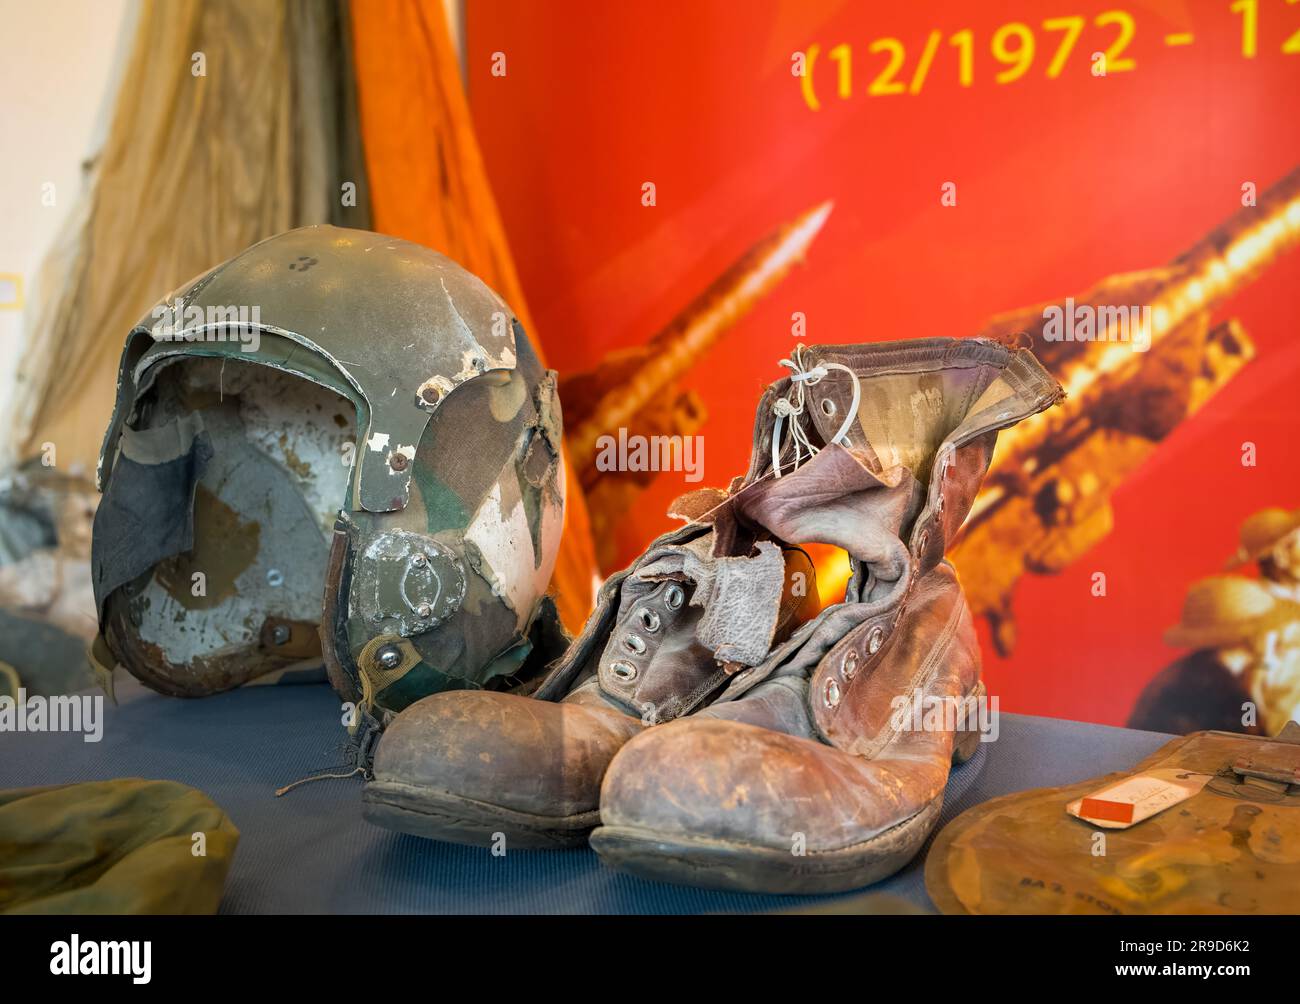 Un casque volant et des bottes en cuir d'un Airman américain qui a été abattu lors du « bombardement de Noël » de Hanoï dans la guerre du Vietnam en 1972, le d Banque D'Images